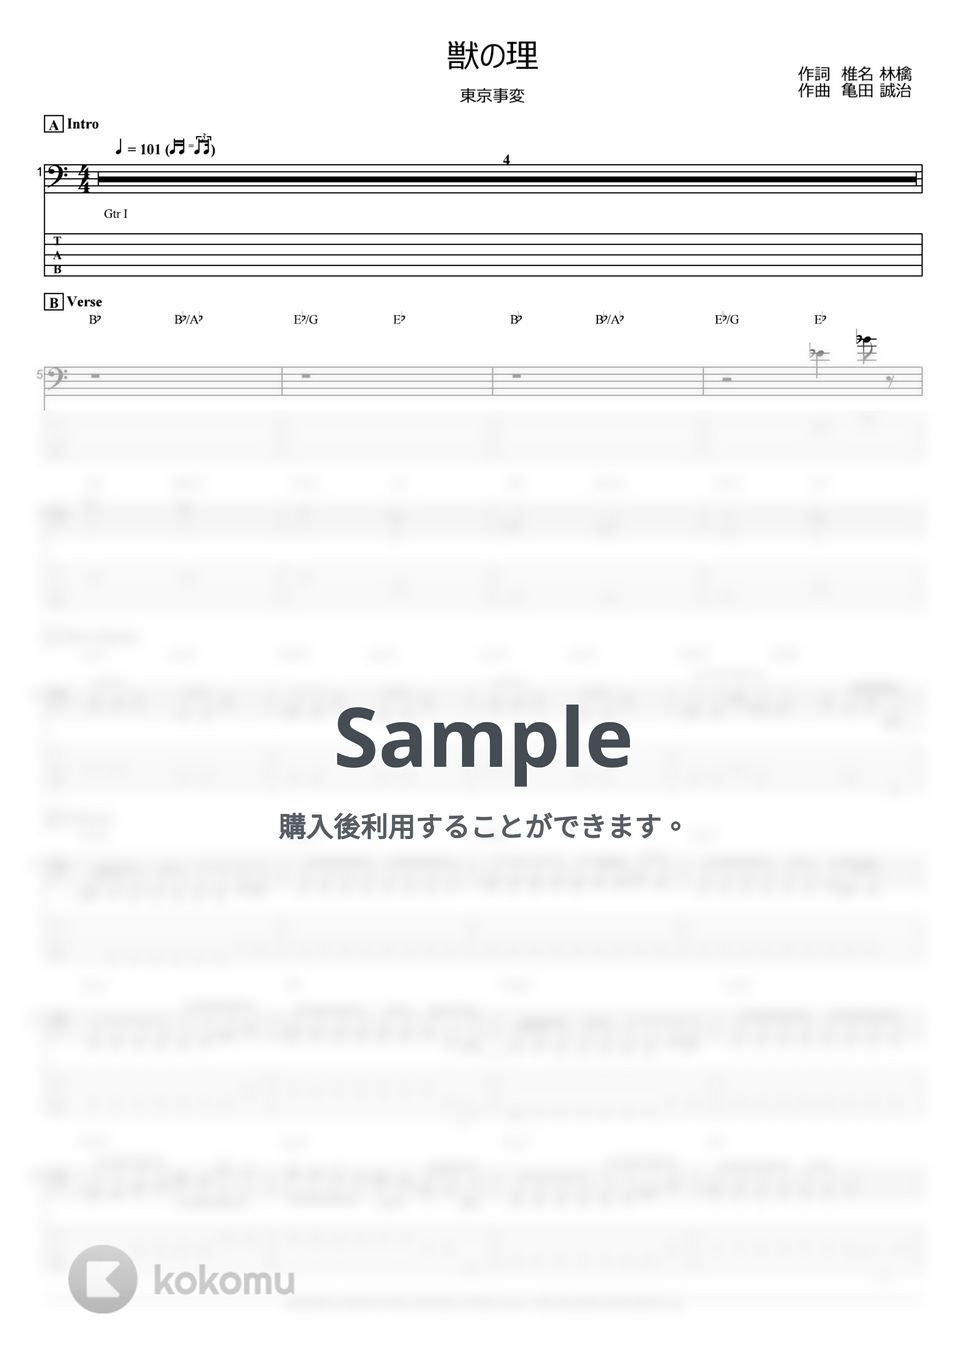 東京事変 - 獣の理 (ベース Tab譜 5弦) by T's bass score